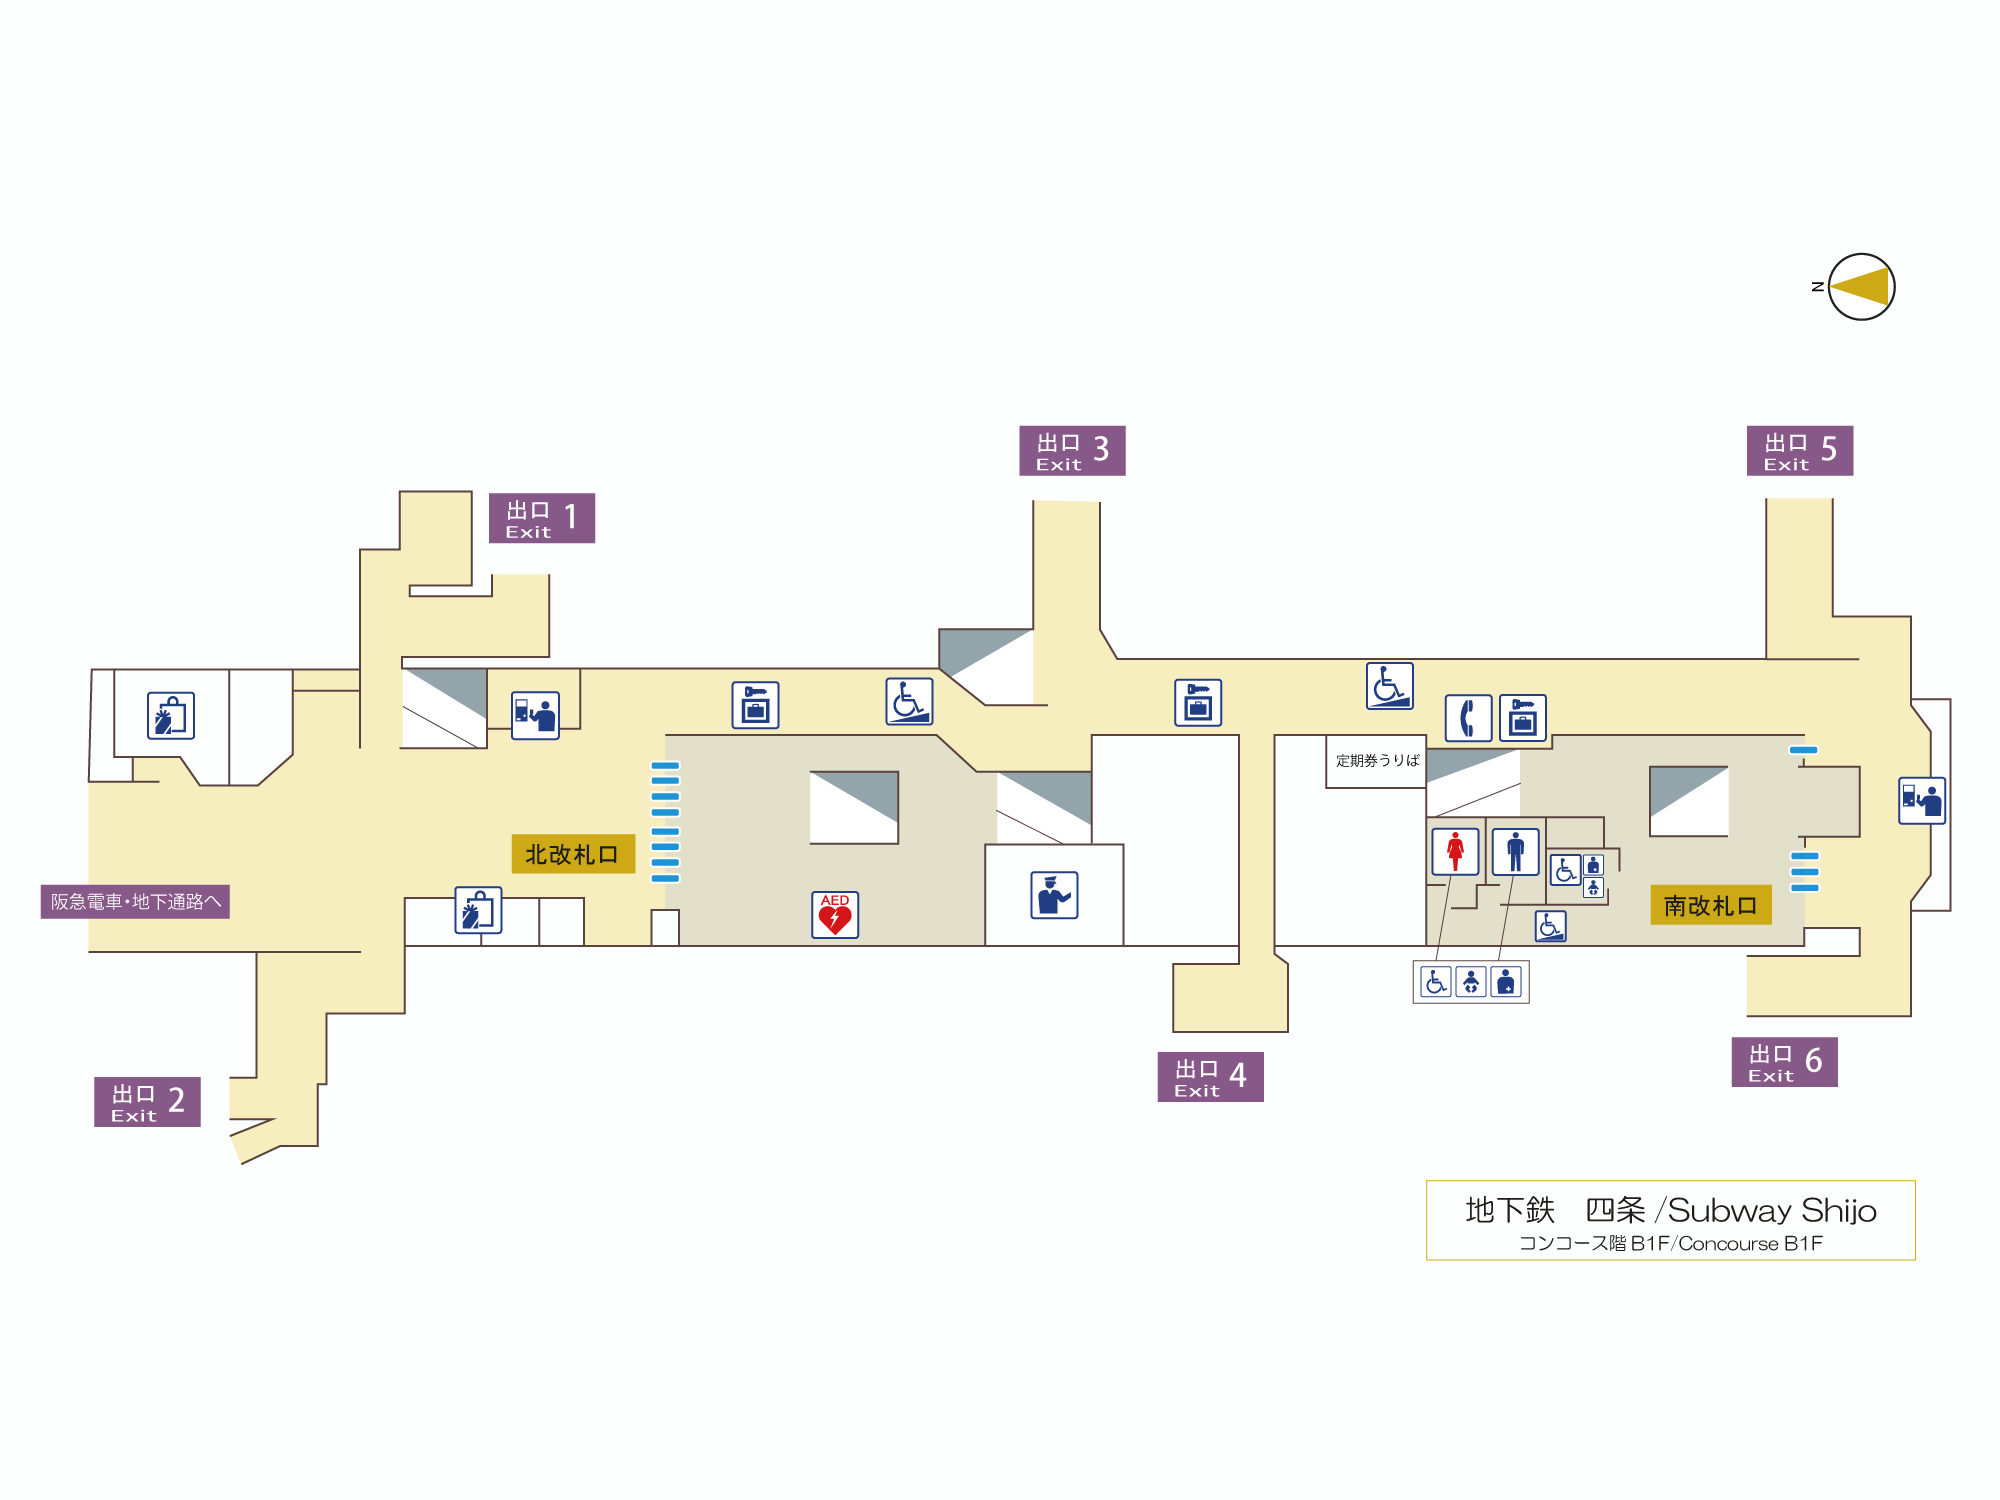 構内図表示 歩くまち京都 バス 鉄道の達人